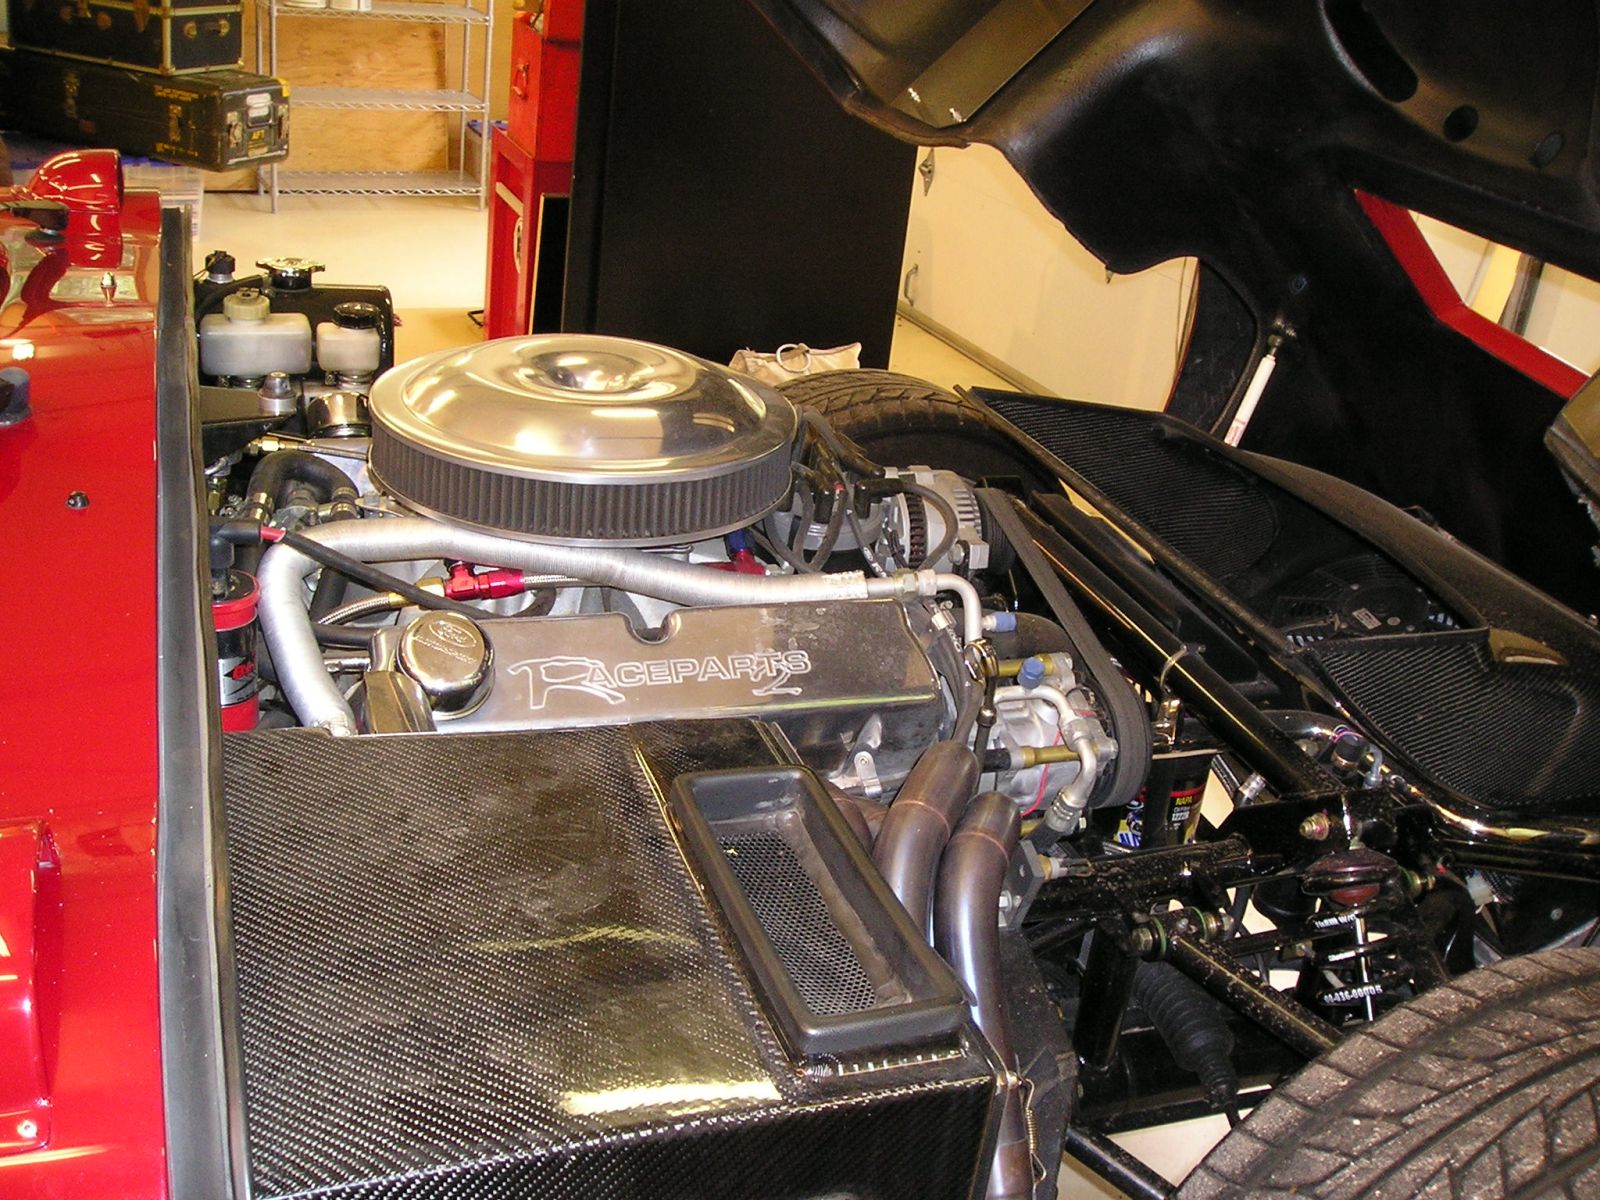 Pete Brocks' Cobra Daytona Coupe